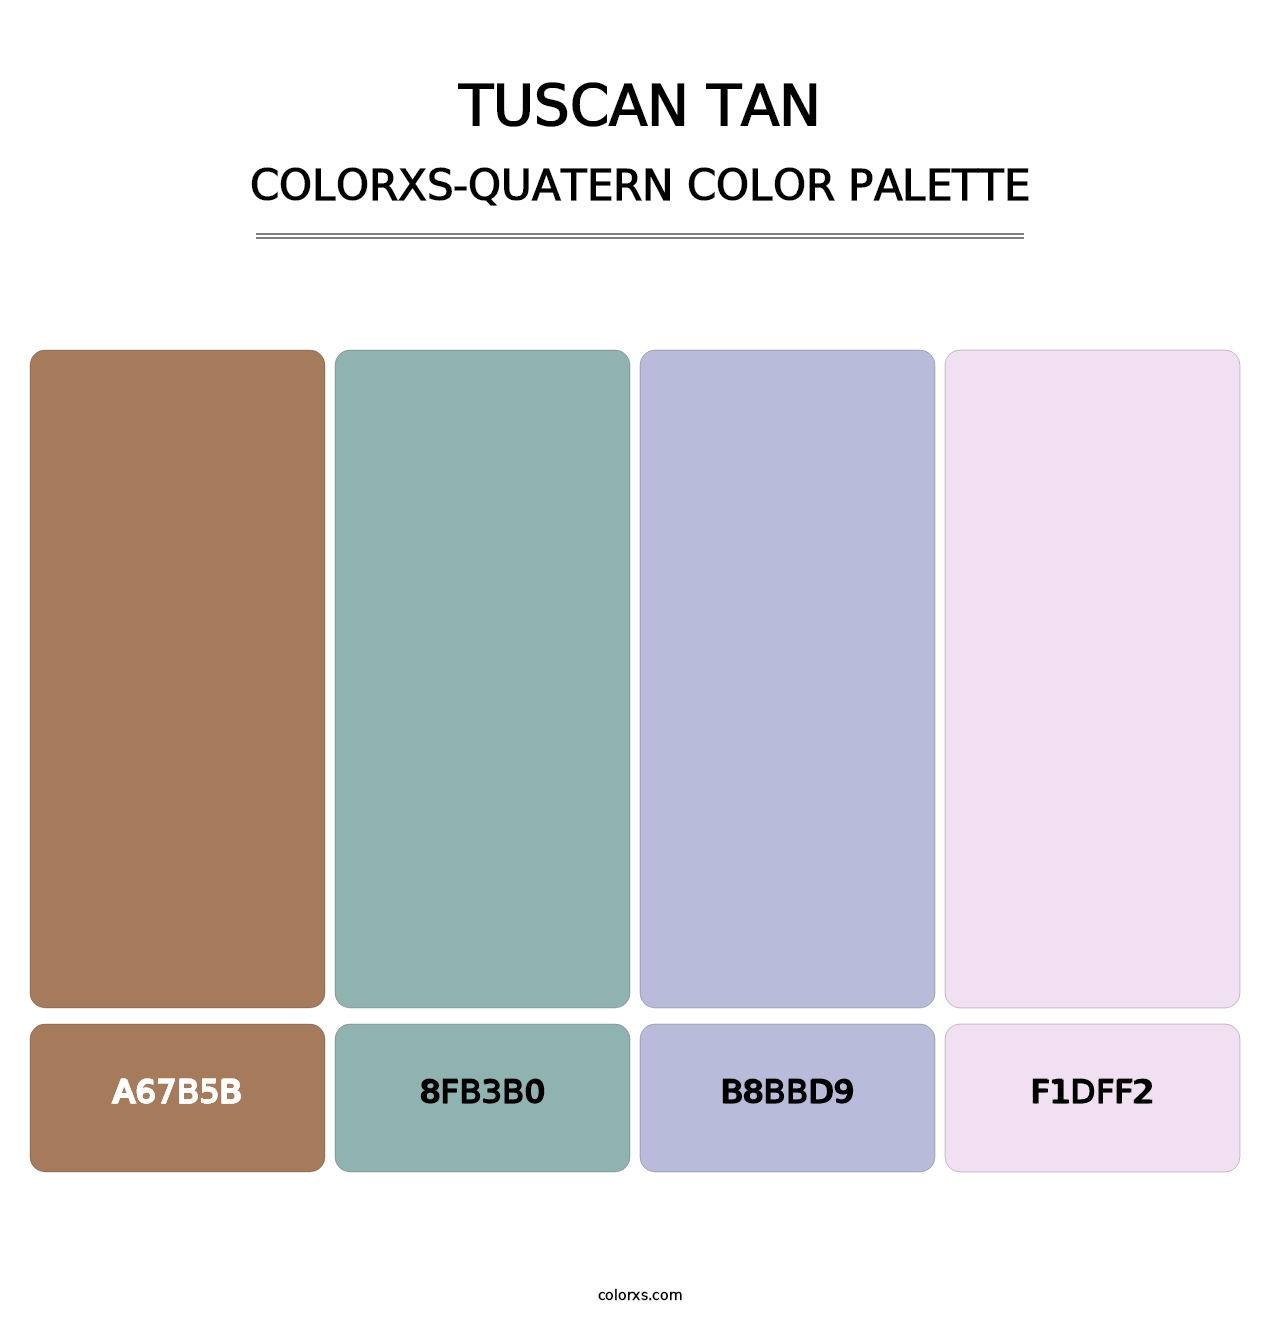 Tuscan Tan - Colorxs Quatern Palette